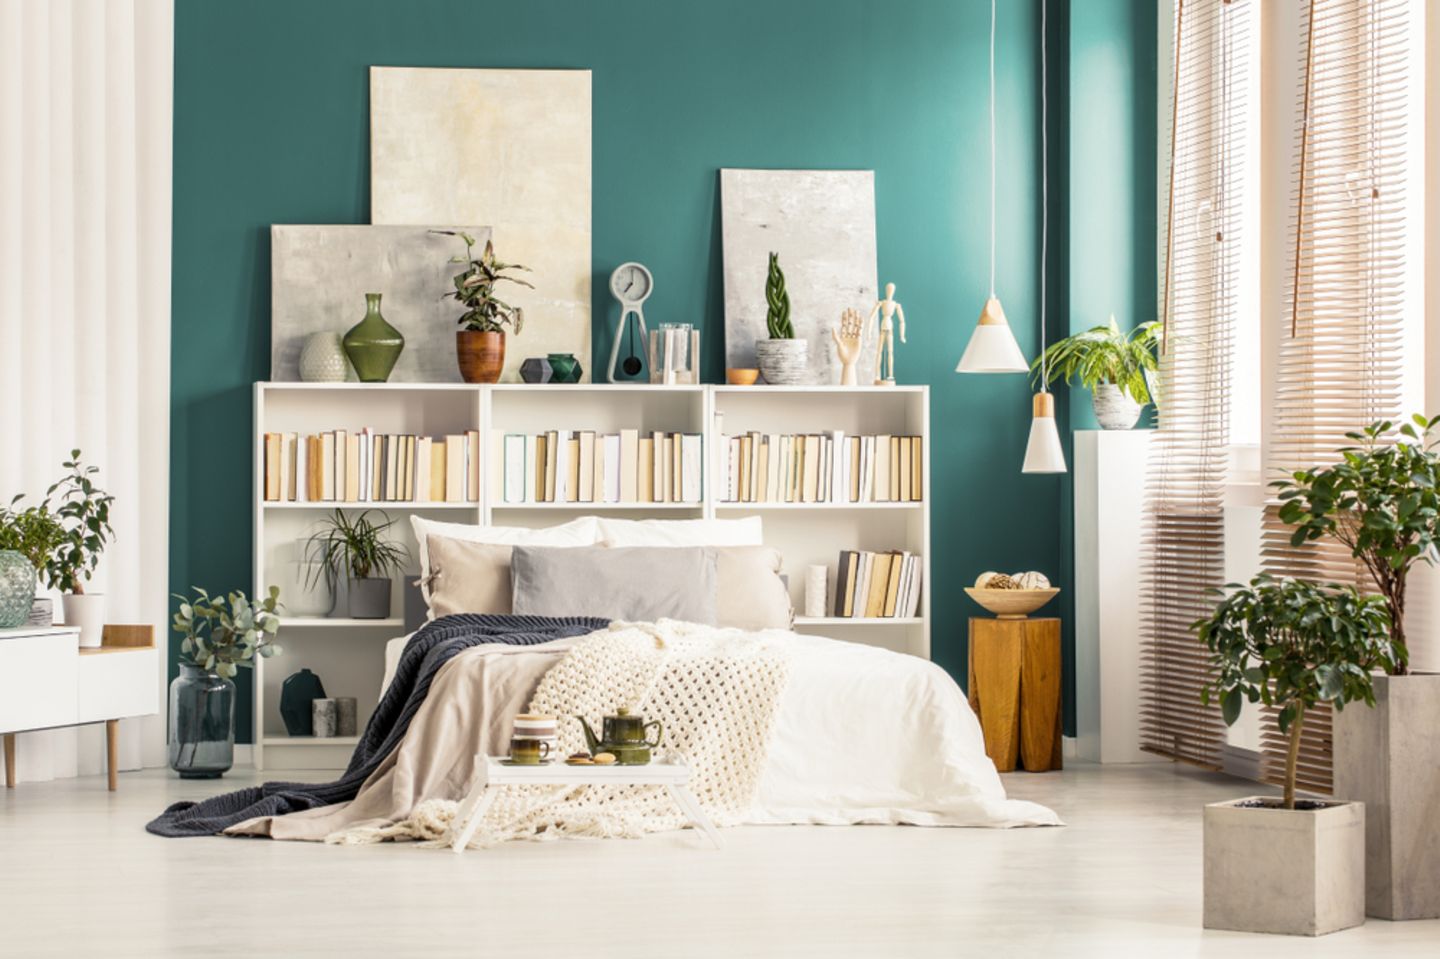 Wandgestaltung Schlafzimmer: 12 kreative Ideen  BRIGITTE.de